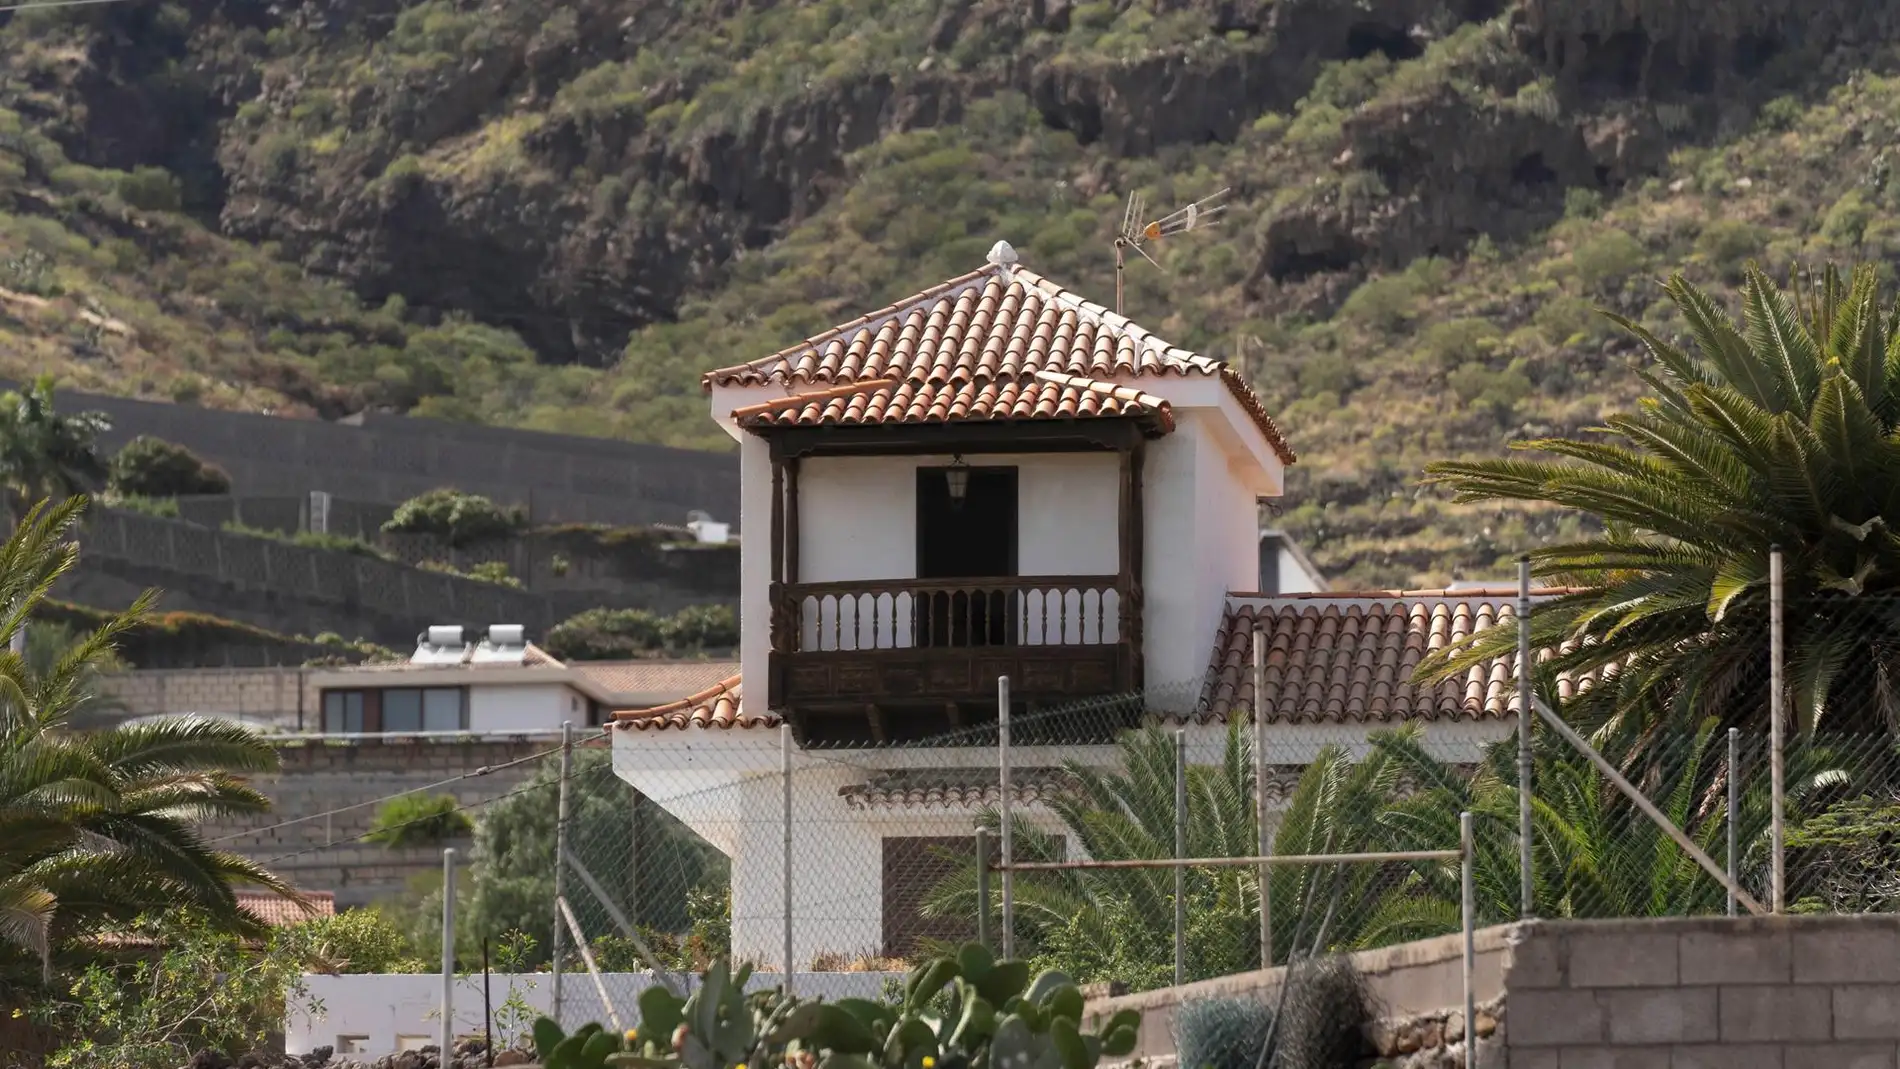 Orden de búsqueda internacional para el padre y sus dos hijas desaparecidos en Tenerife